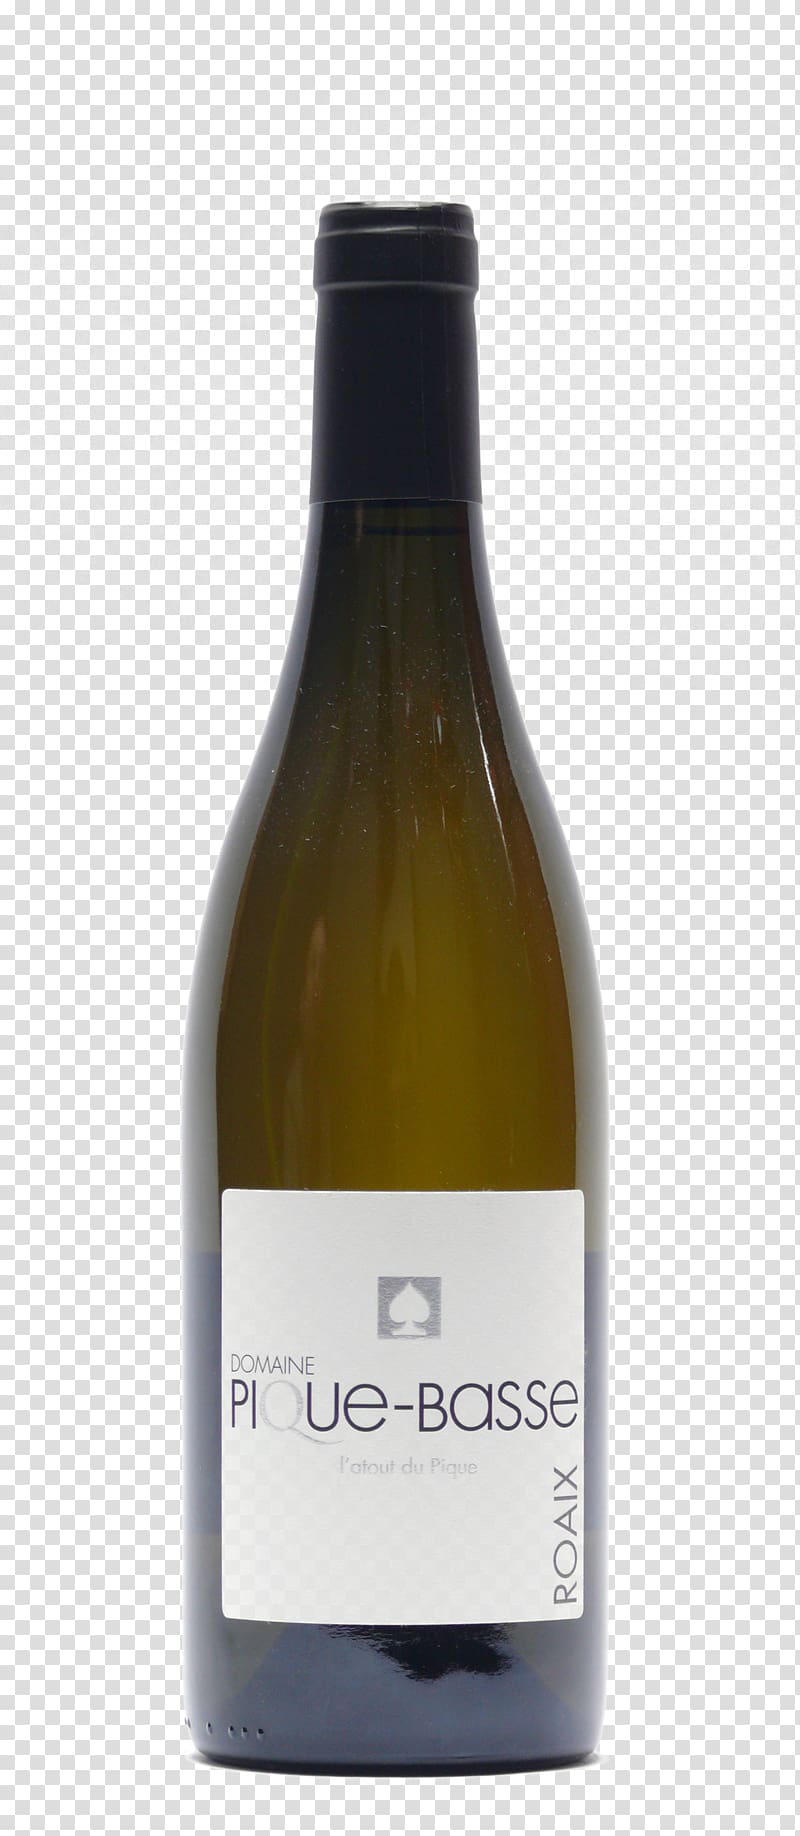 White wine Viognier Arinto Vini della Sicilia, wine transparent background PNG clipart